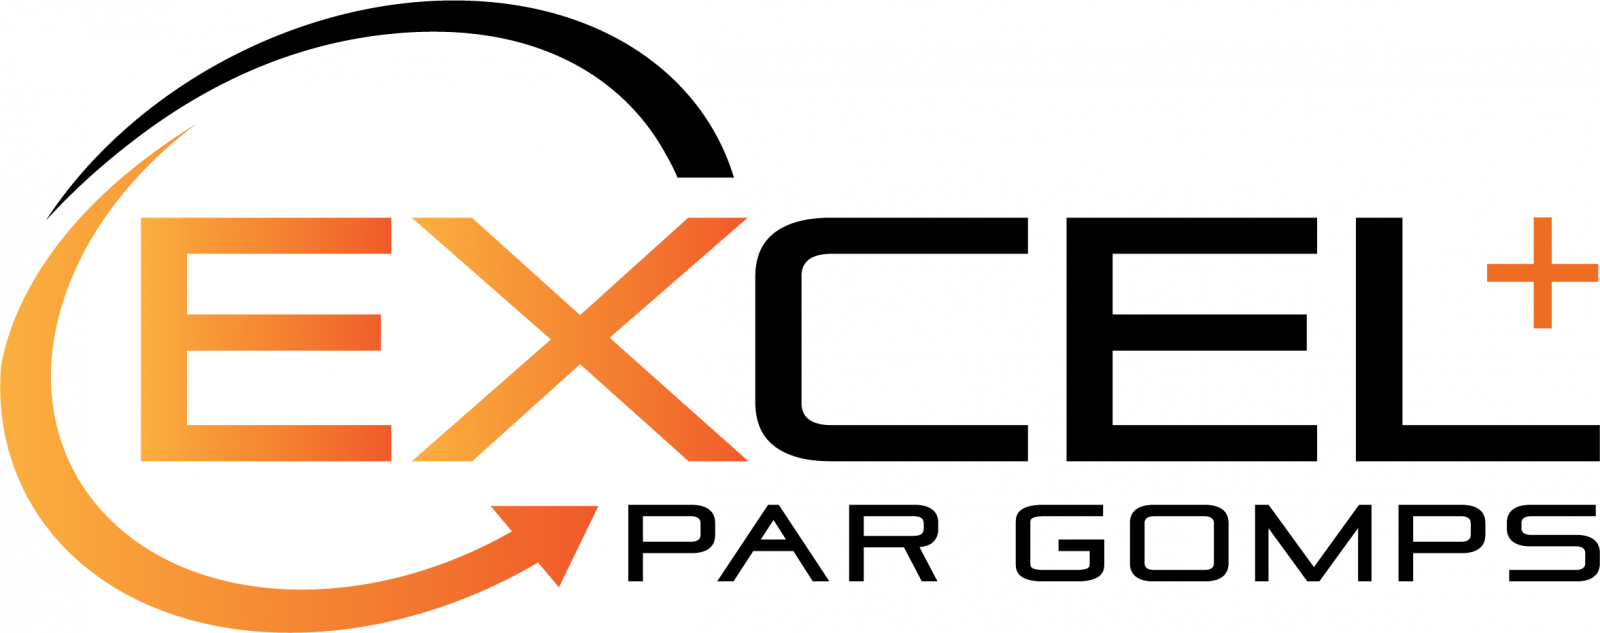 Excel plus par GoMPS_Orange-01